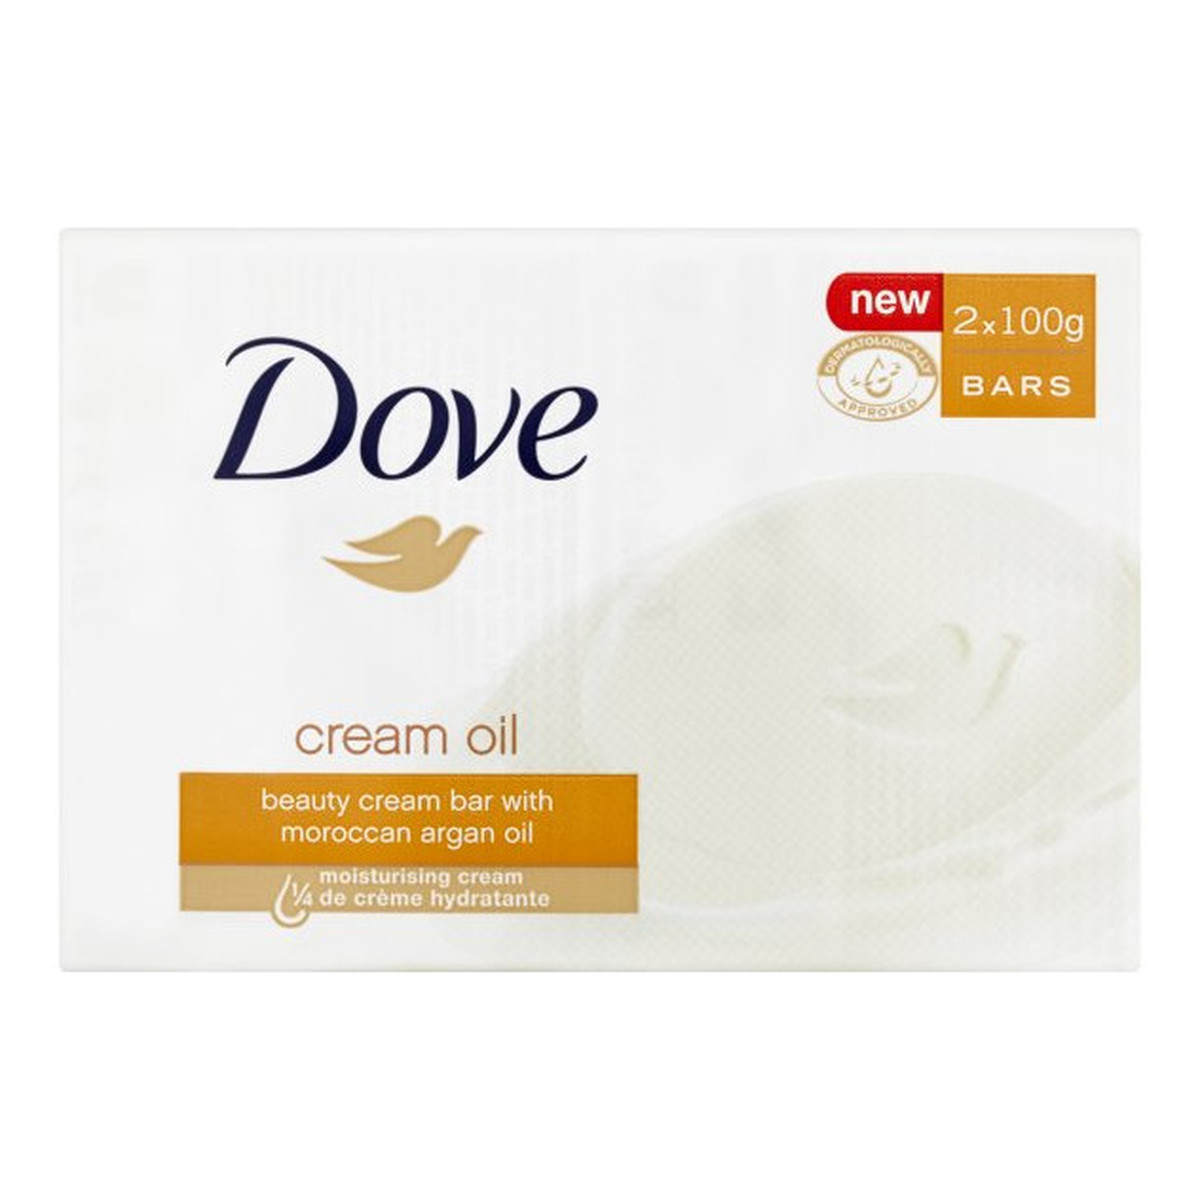 Dove Cream Oil nawilżające mydło w kostce Marokański Olejek Agranowy 2x100g 200g